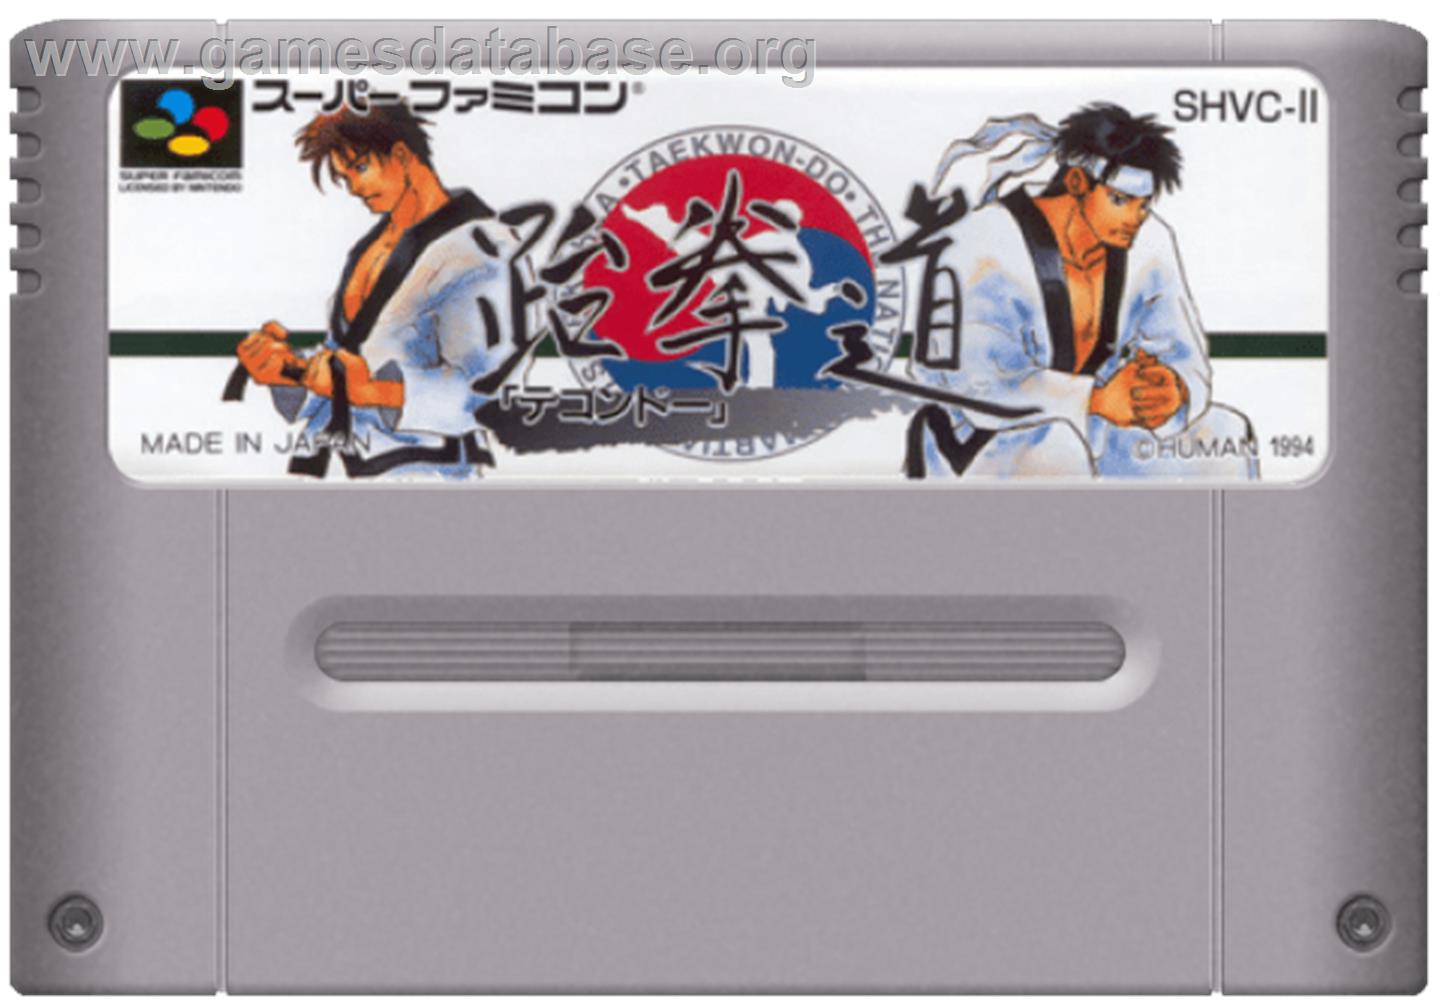 Taekwondo - Nintendo SNES - Artwork - Cartridge